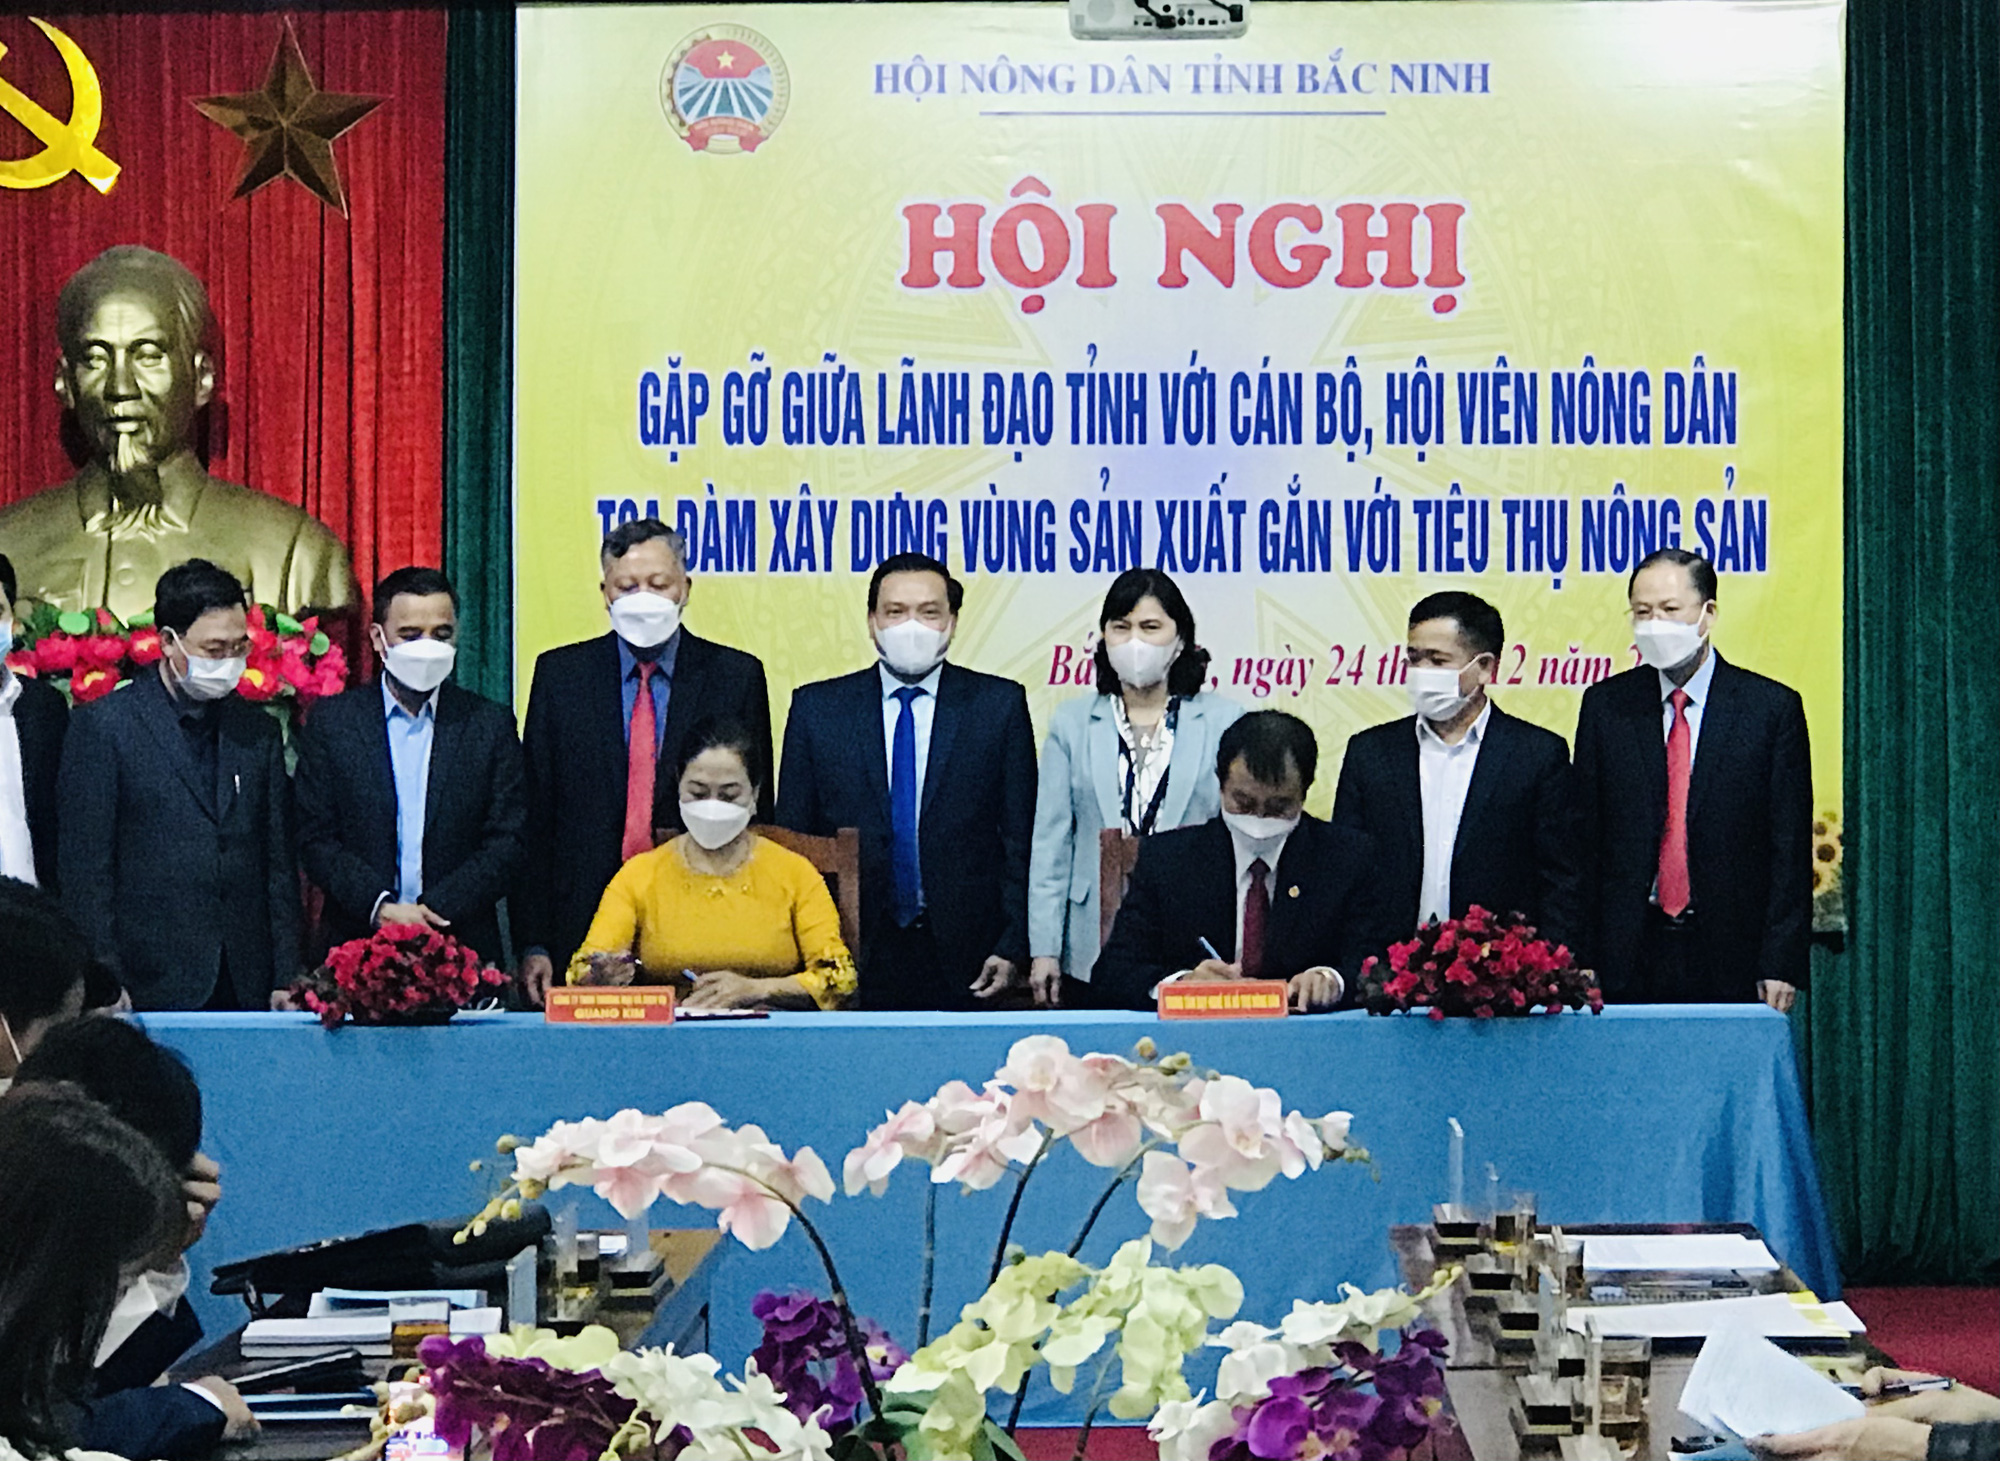 Bắc Ninh: Lãnh đạo tỉnh đối thoại, gỡ khó trong sản xuất nông nghiệp cho nông dân - Ảnh 4.